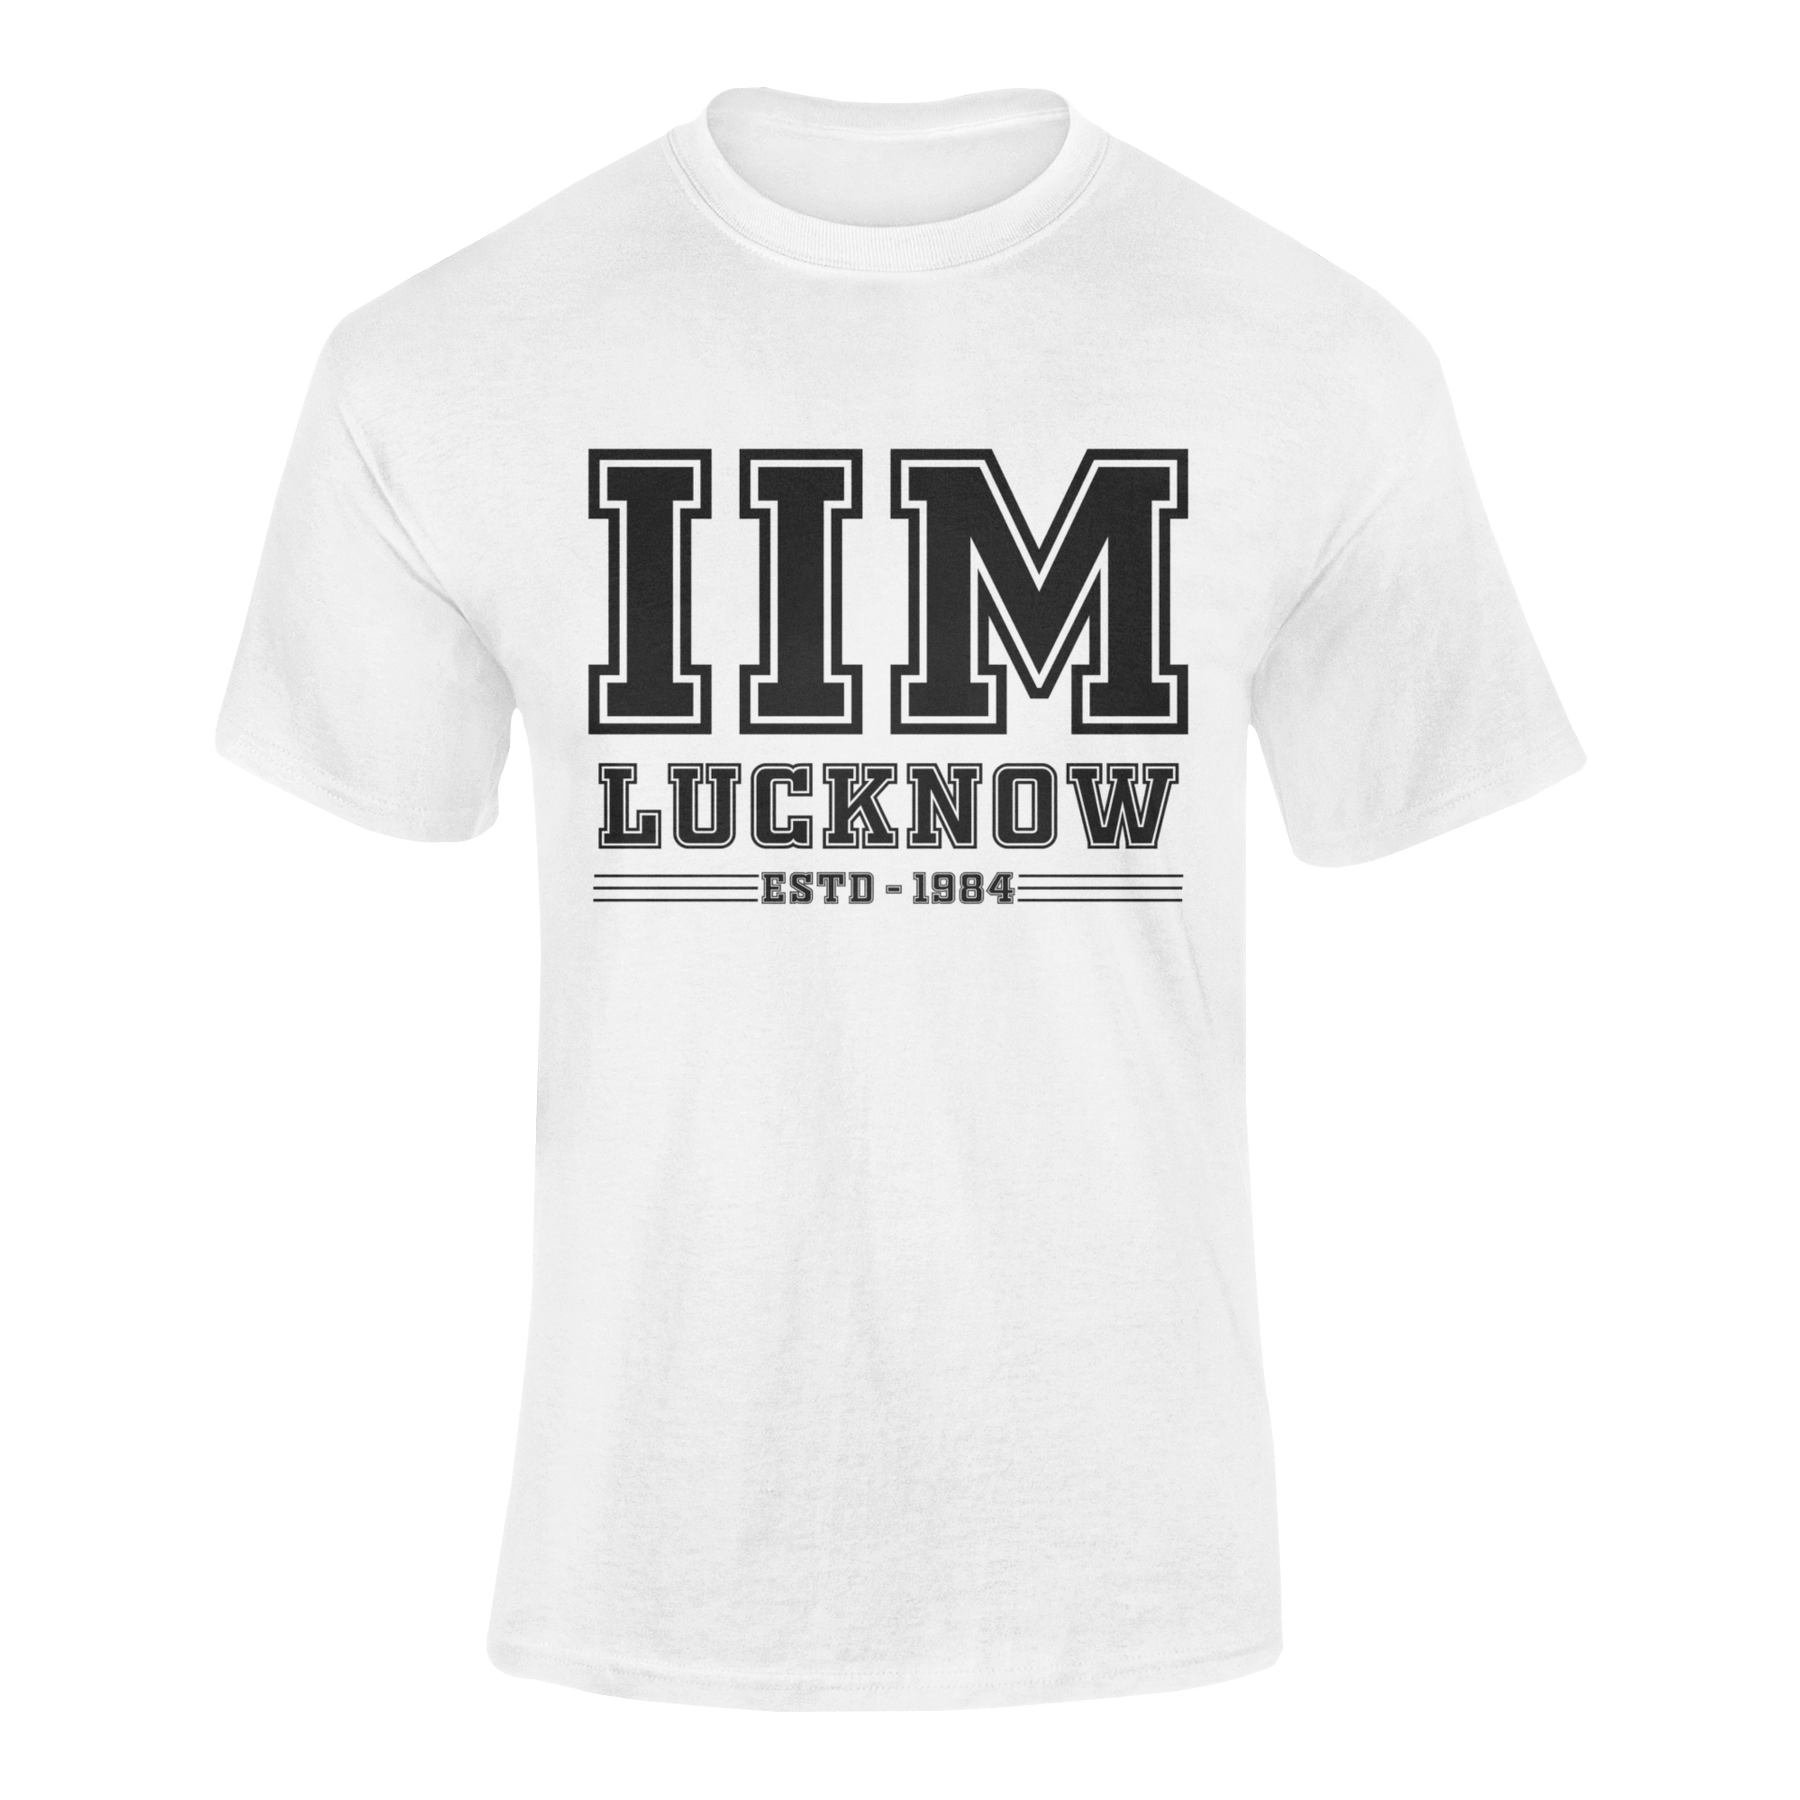 IIM LUCKNOW - teeshood.com